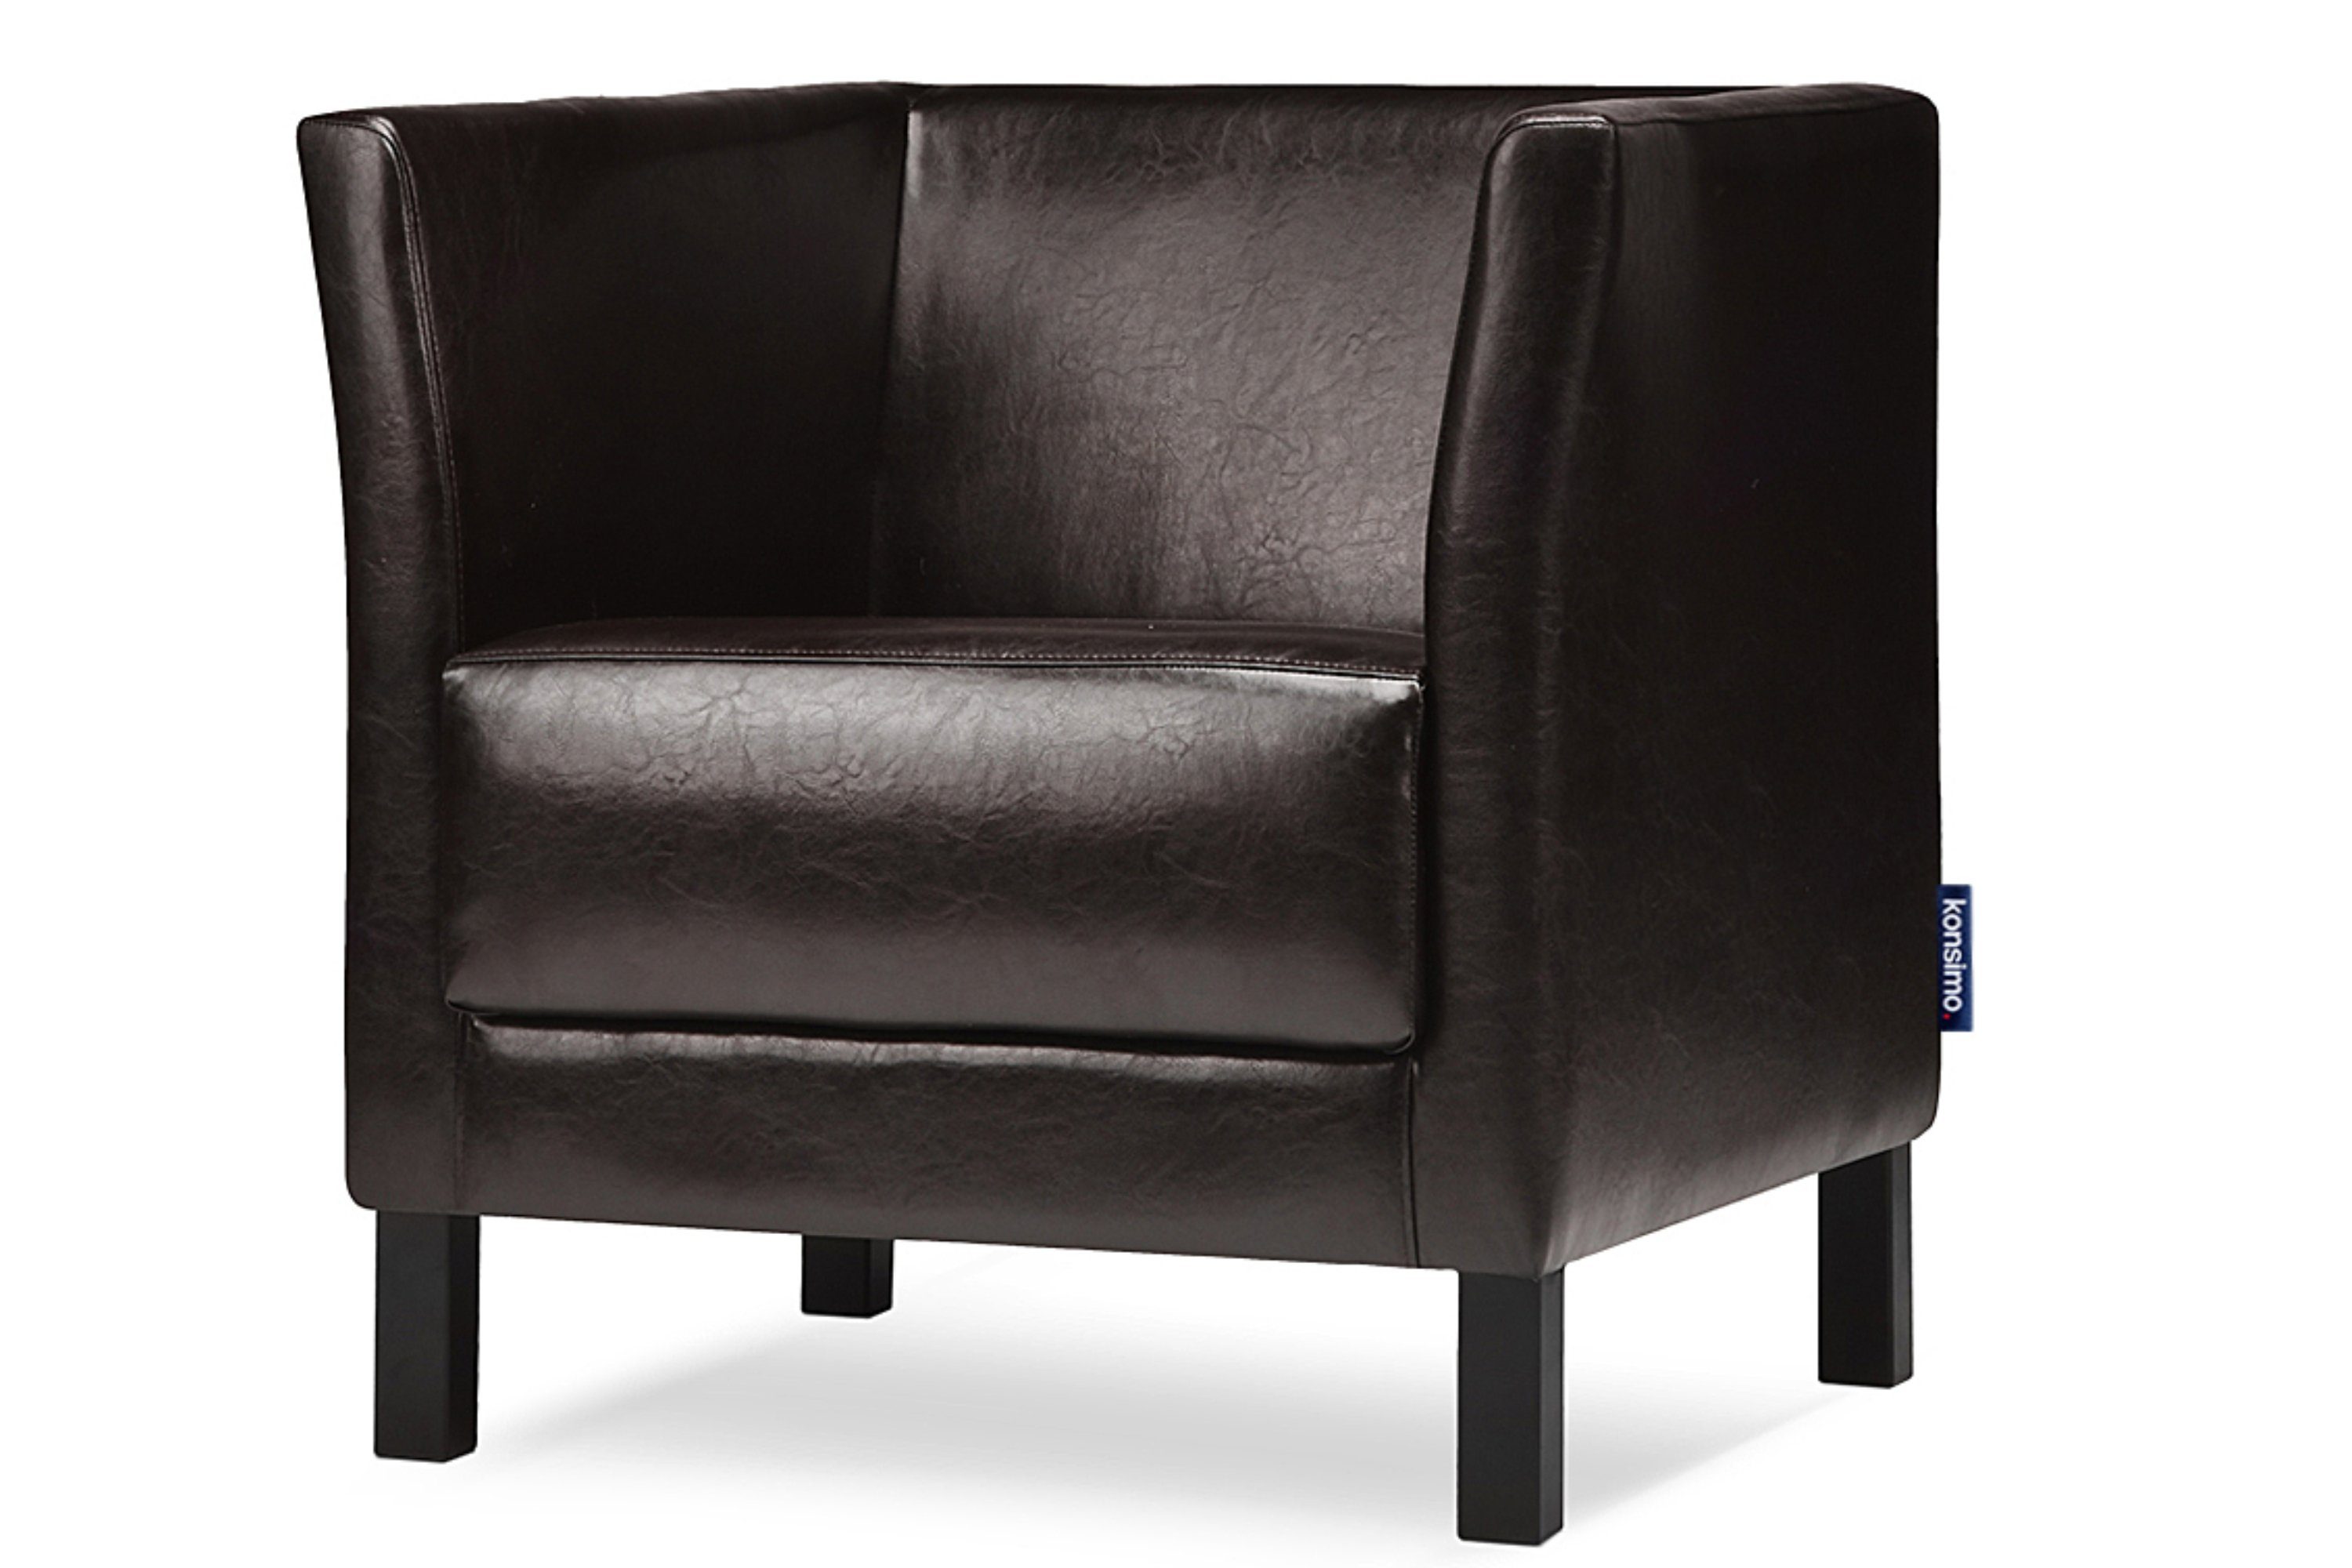 Konsimo Sessel ESPECTO Sessel, hohe Massivholzbeine, weiche Sitzfläche und hohe Rückenlehne, Kunstleder dunkelbraun | dunkelbraun | Dunkelbraun